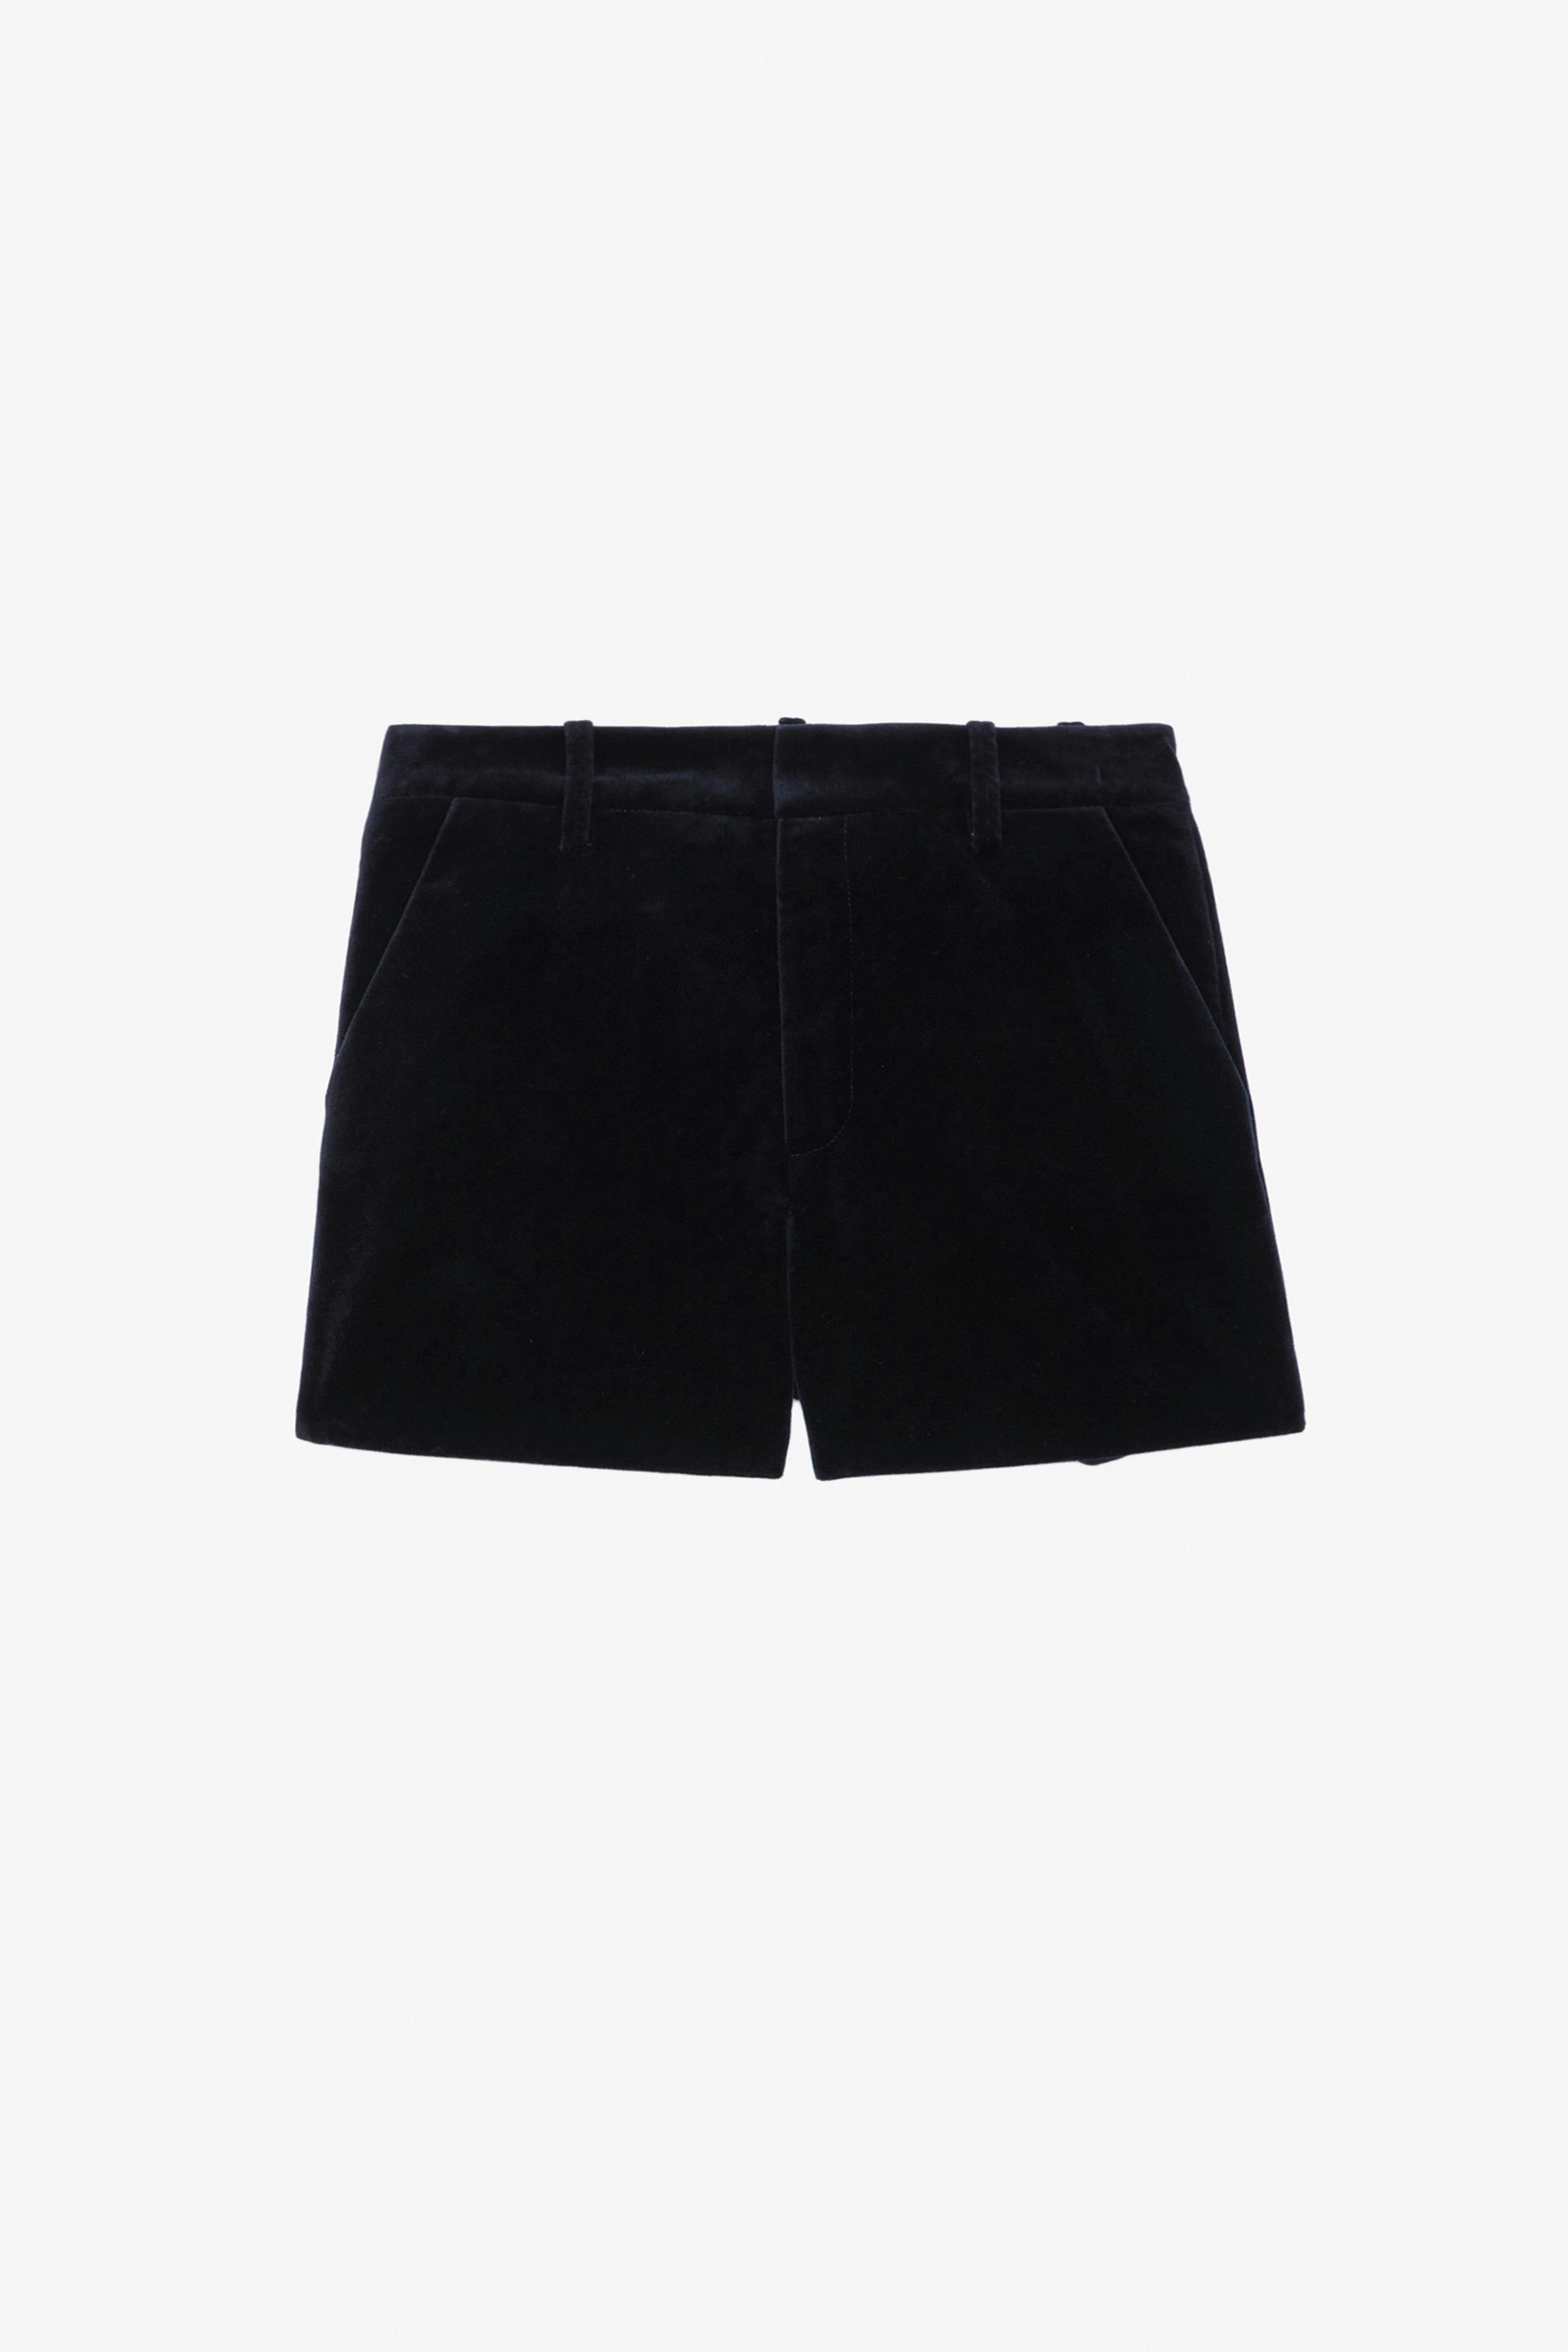 Pink Velvet ショーツ - Navy blue velvet tailored shorts with pockets.